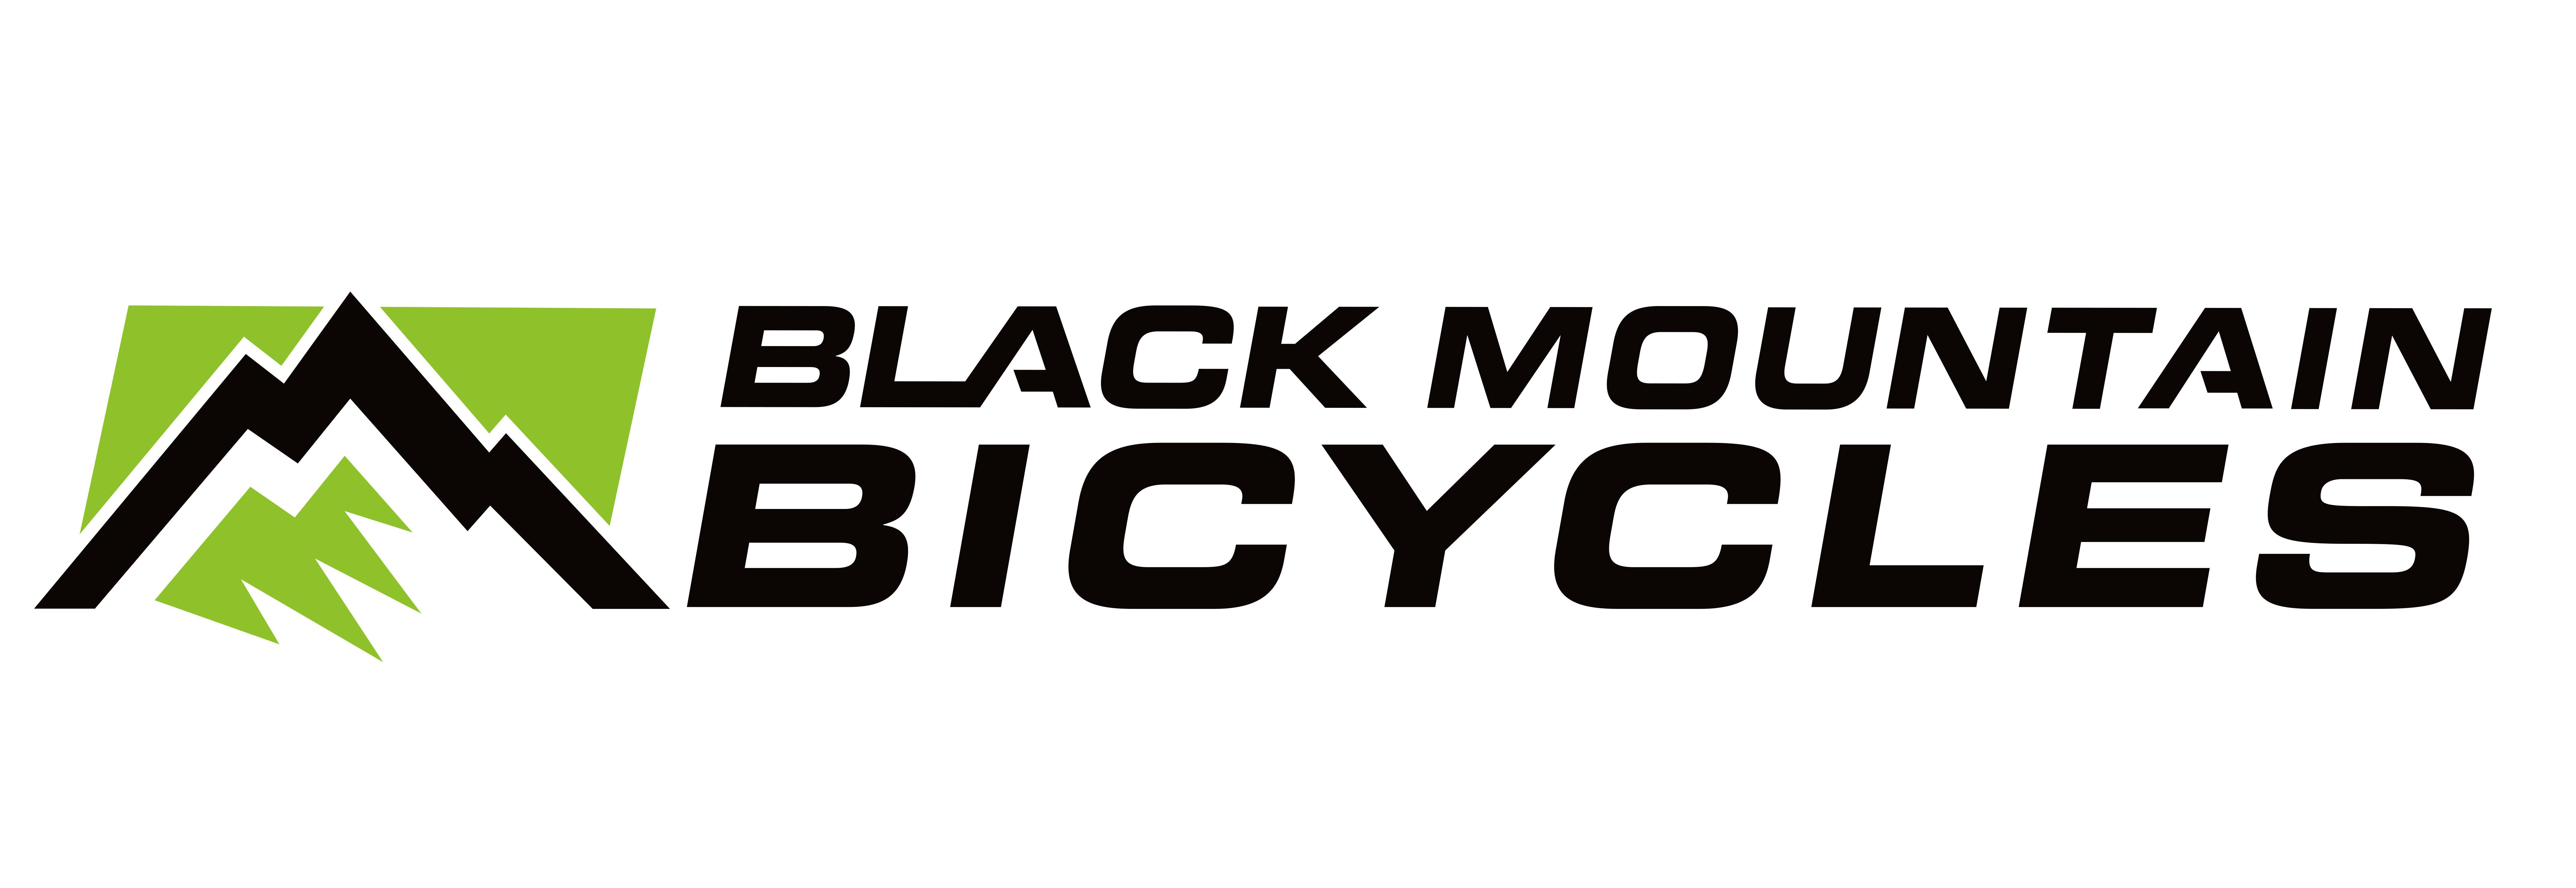 Black Mountain Logo - Black Mountain Logo